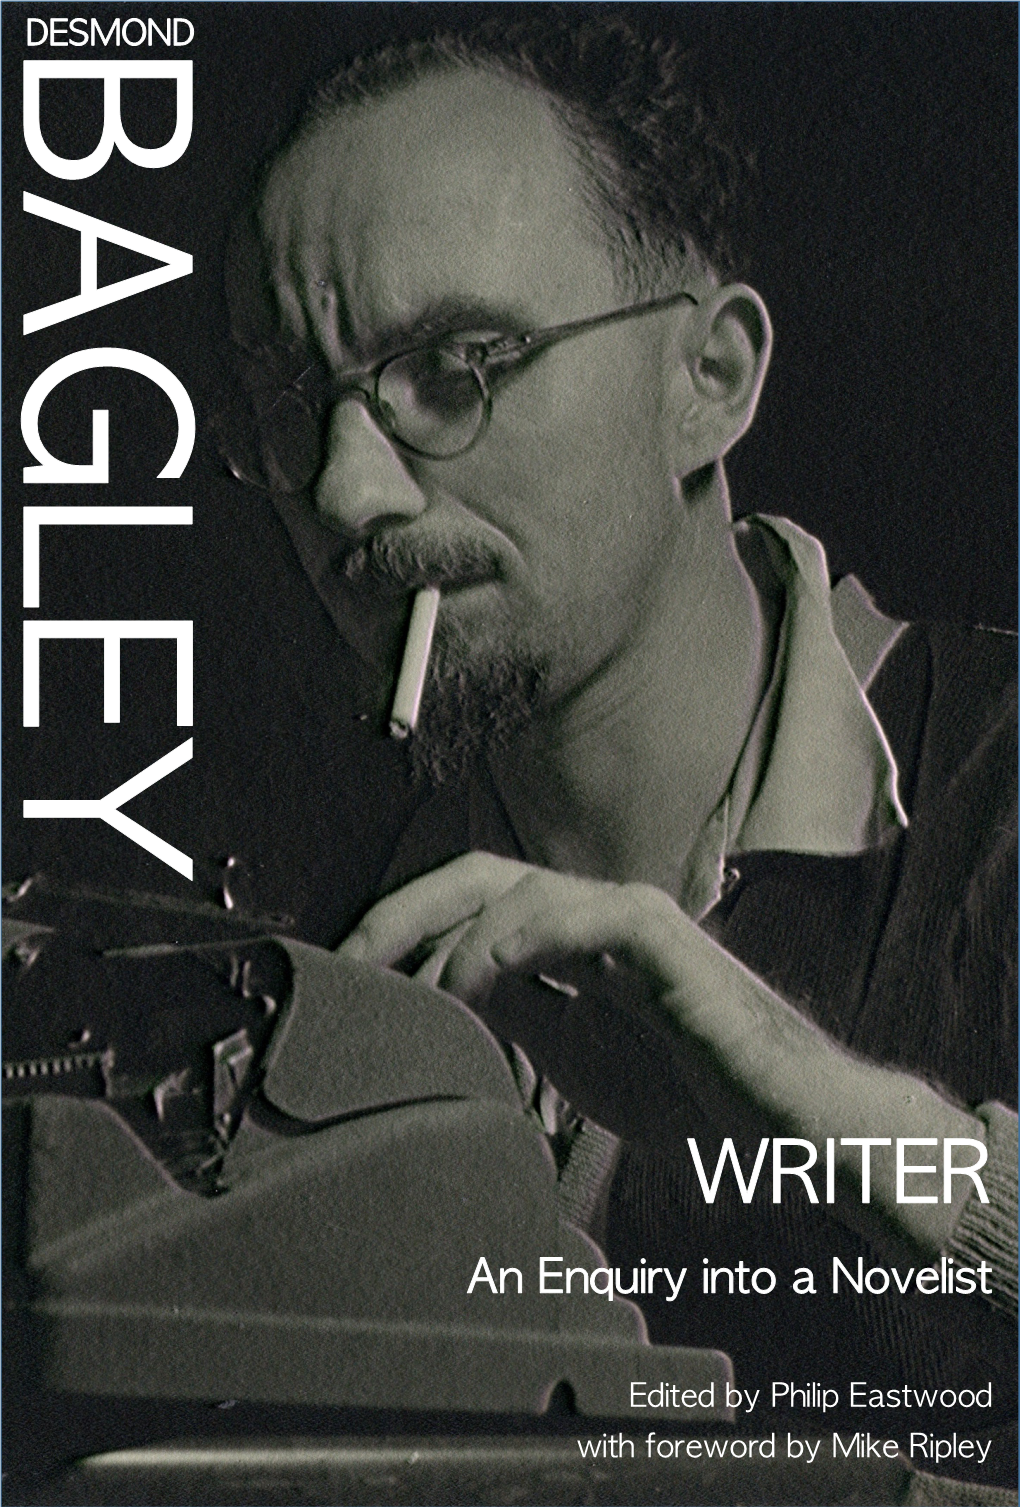 WRITER an Enquiry Into a Novelist